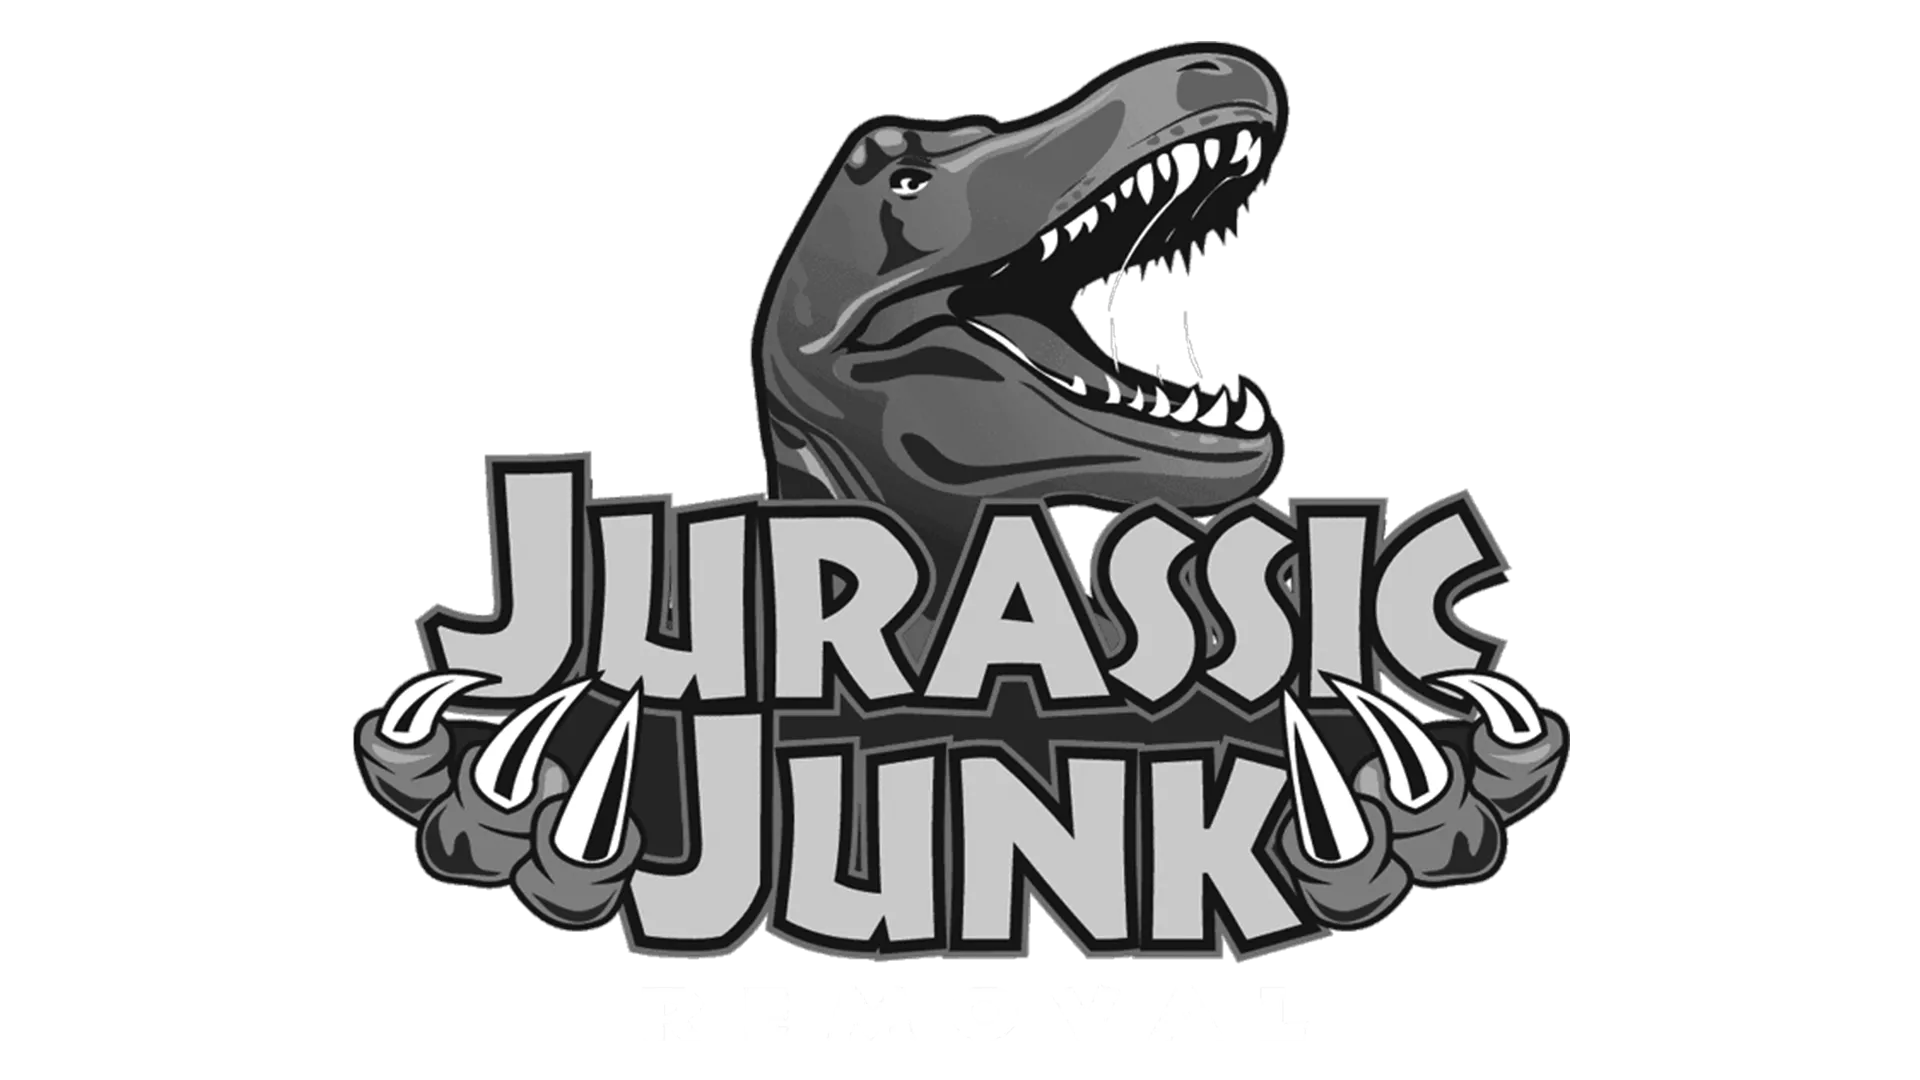 Jurassic Junk Removal